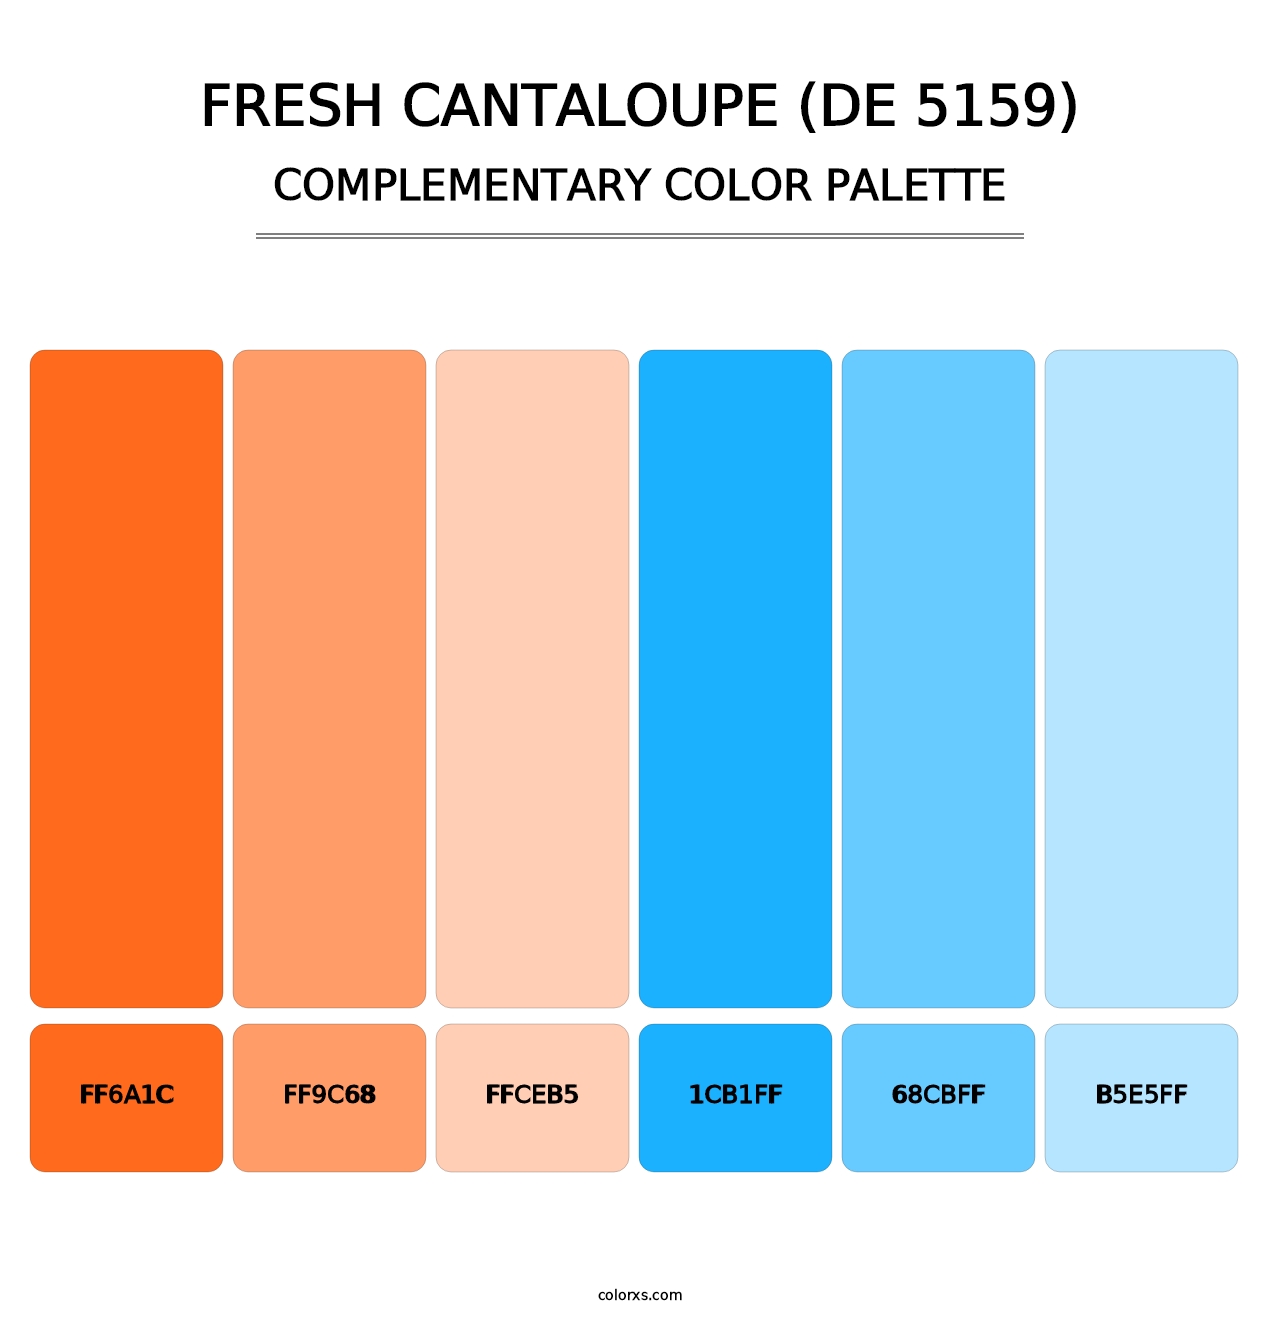 Fresh Cantaloupe (DE 5159) - Complementary Color Palette